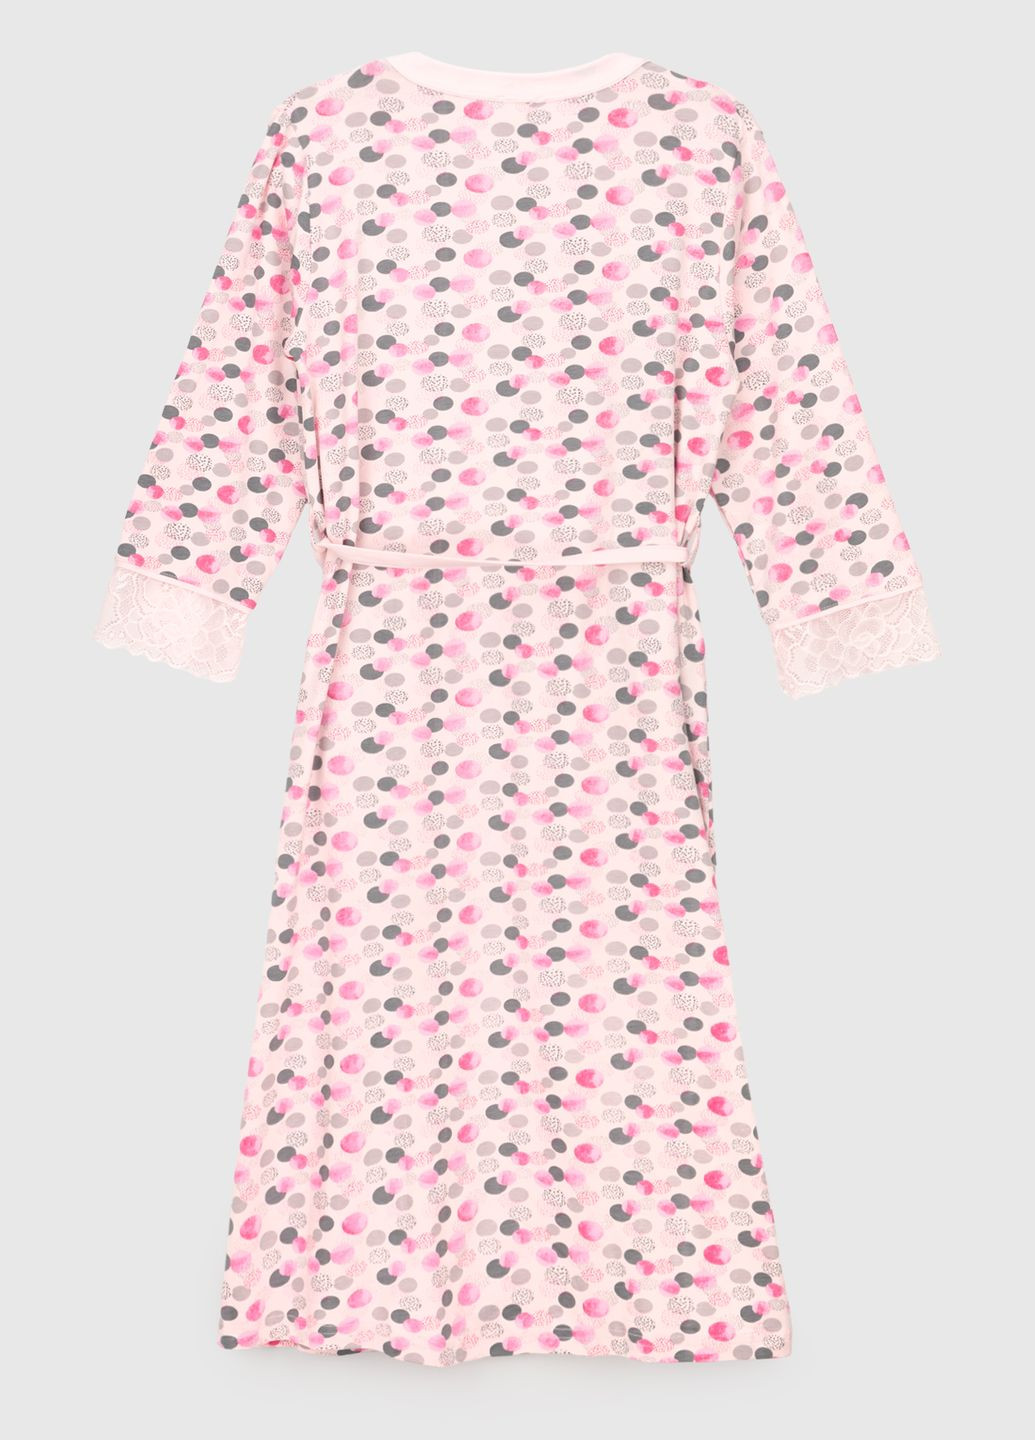 Розовый демисезонный комплект халат+рубашка Nicoletta